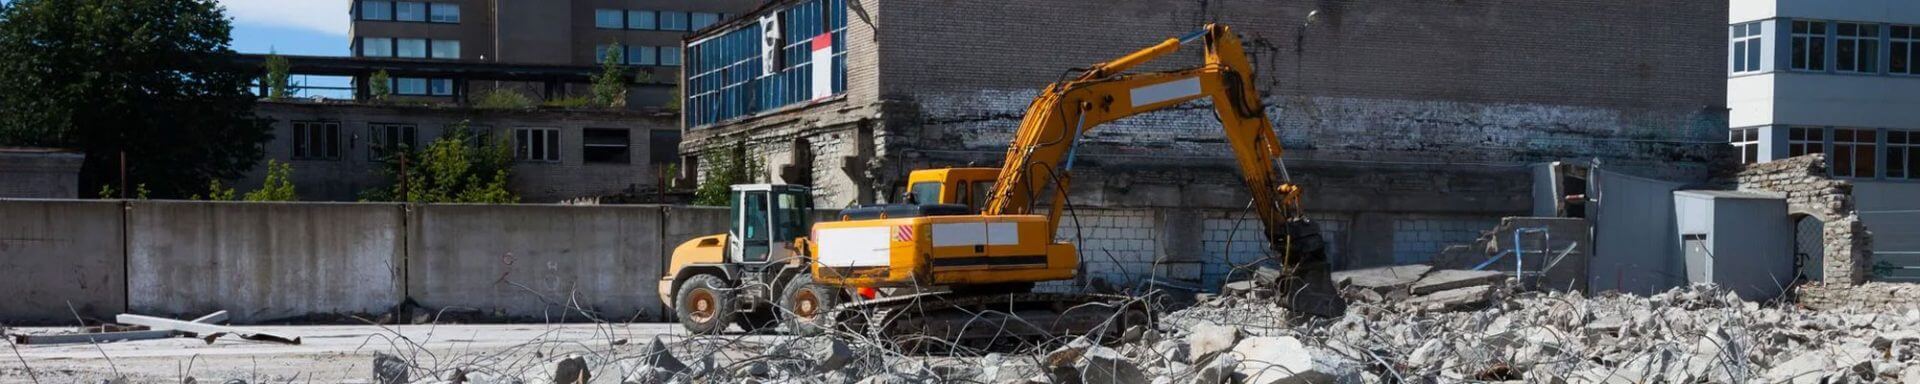 Excavator Demolition